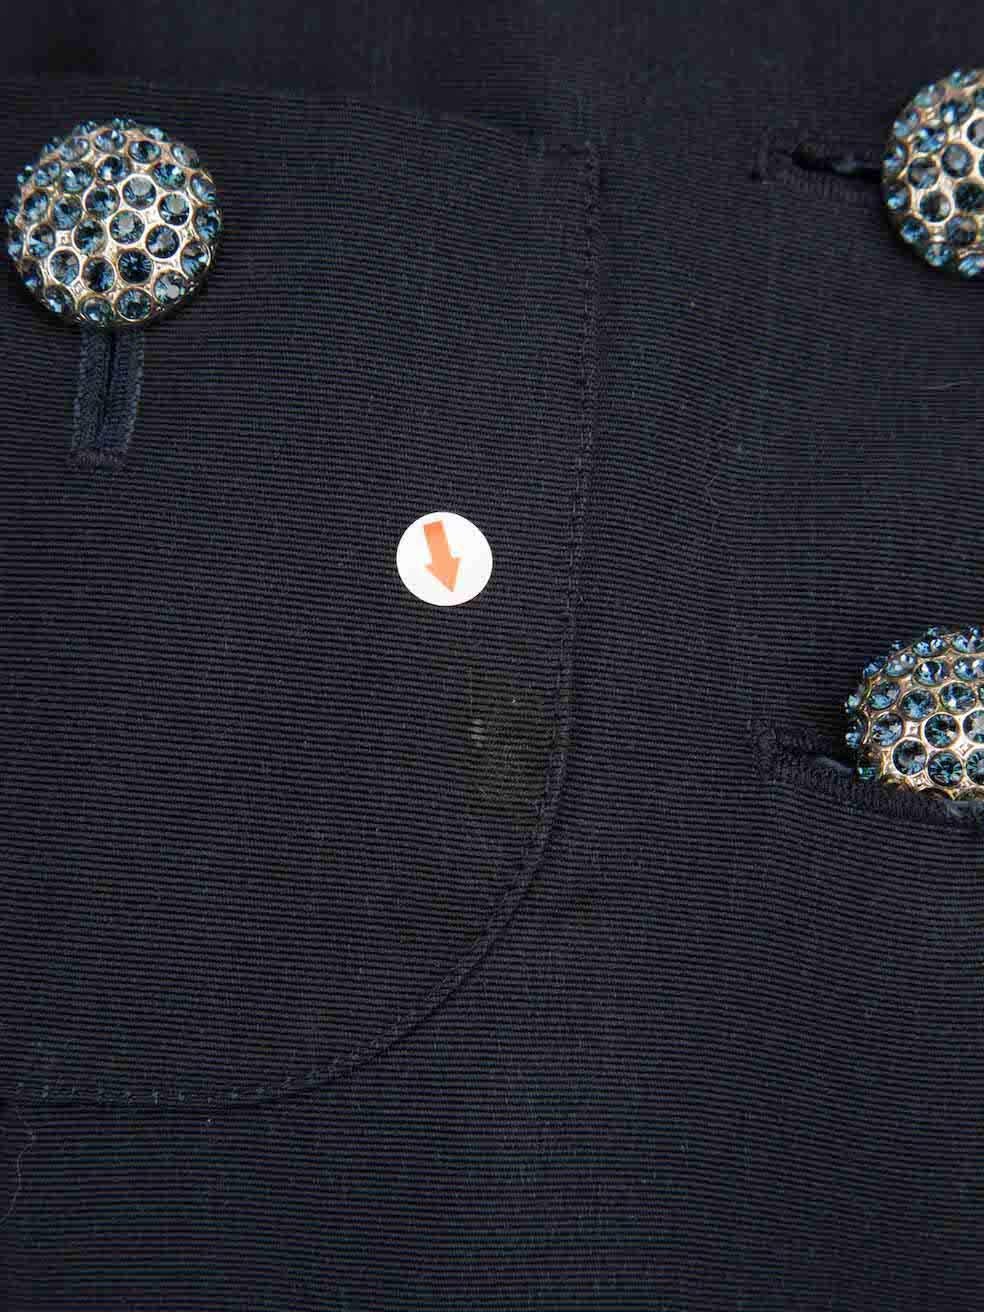 Saint Laurent Vintage Navy Embellished Button Jacket Size XXL For Sale 1